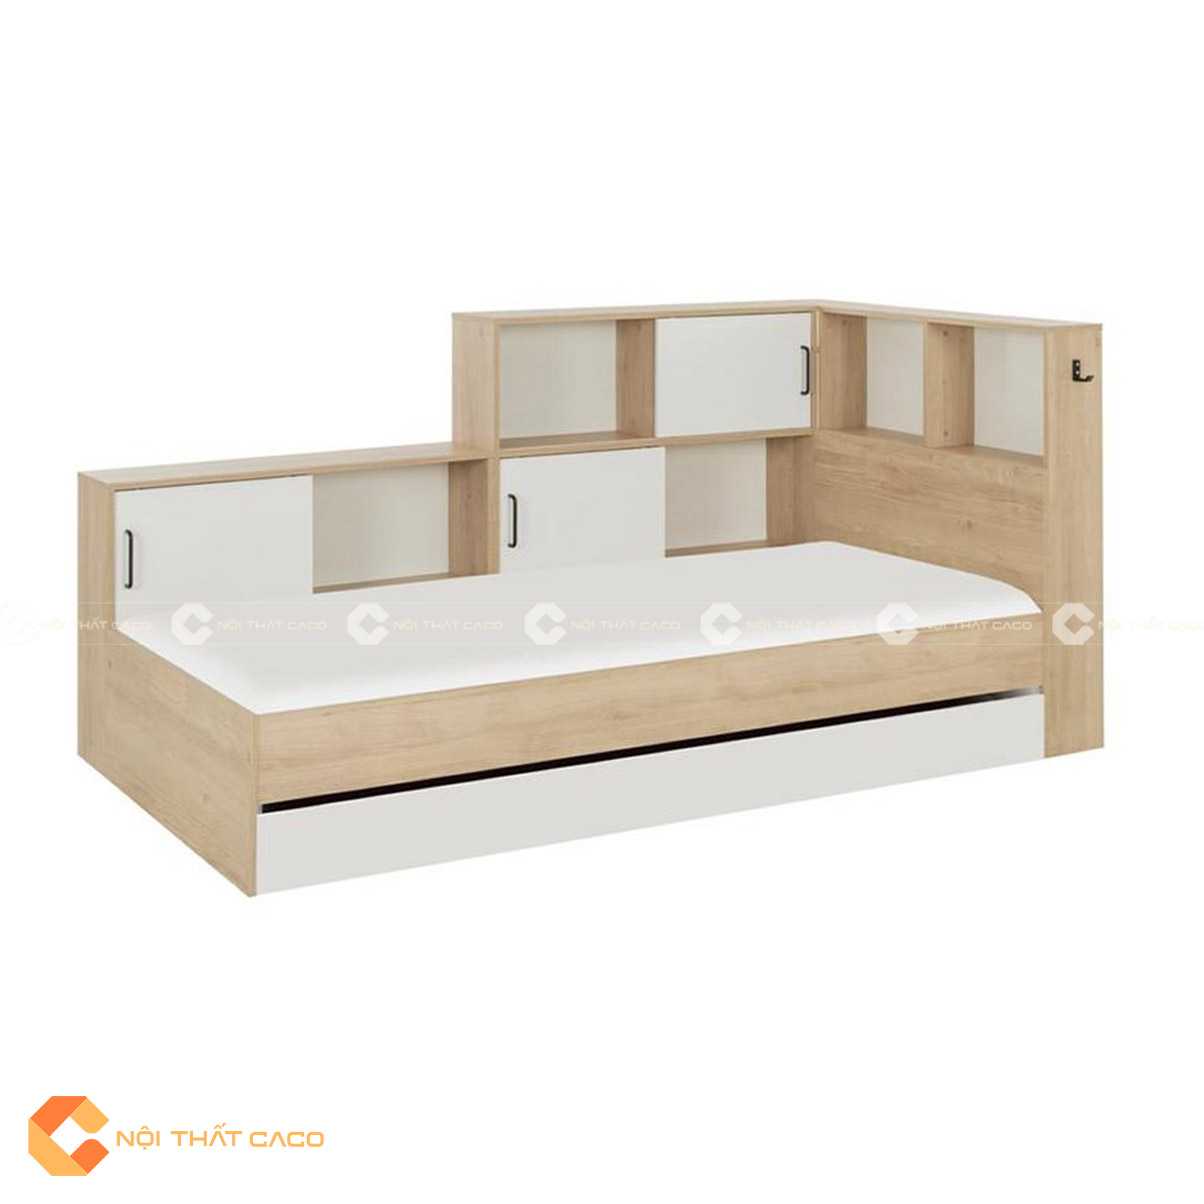 Giường ngủ gỗ MDF thiết kế hộc kéo thông minh